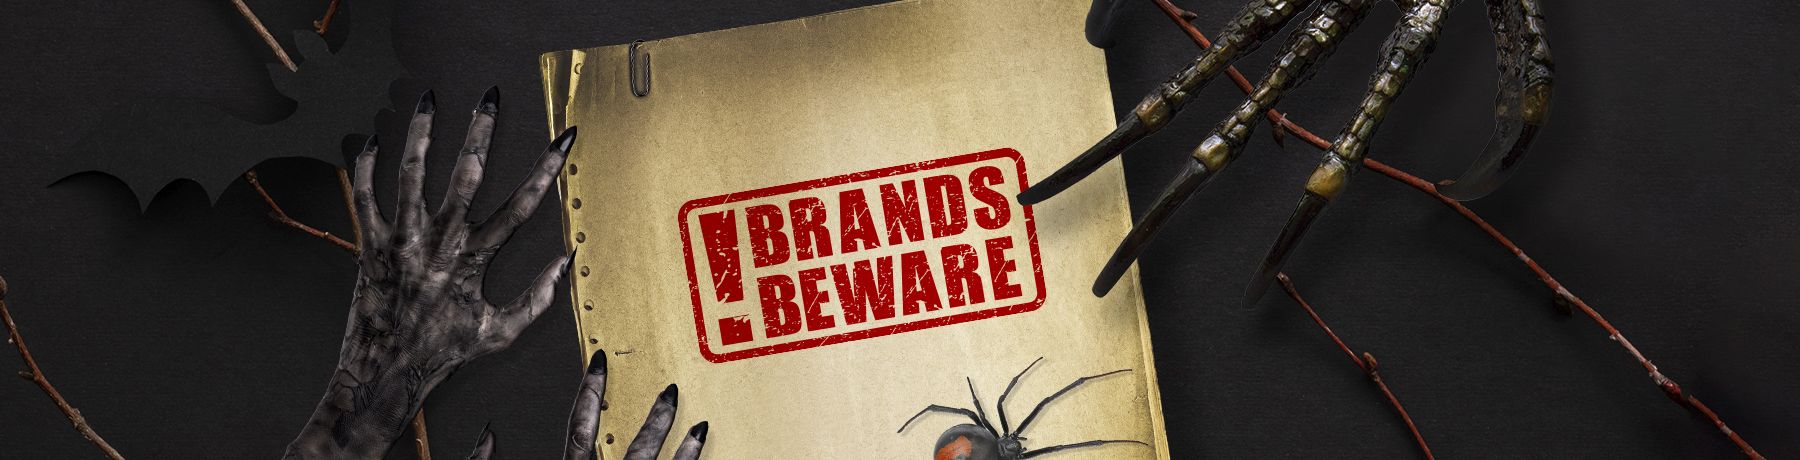 Brand Marketers Beware